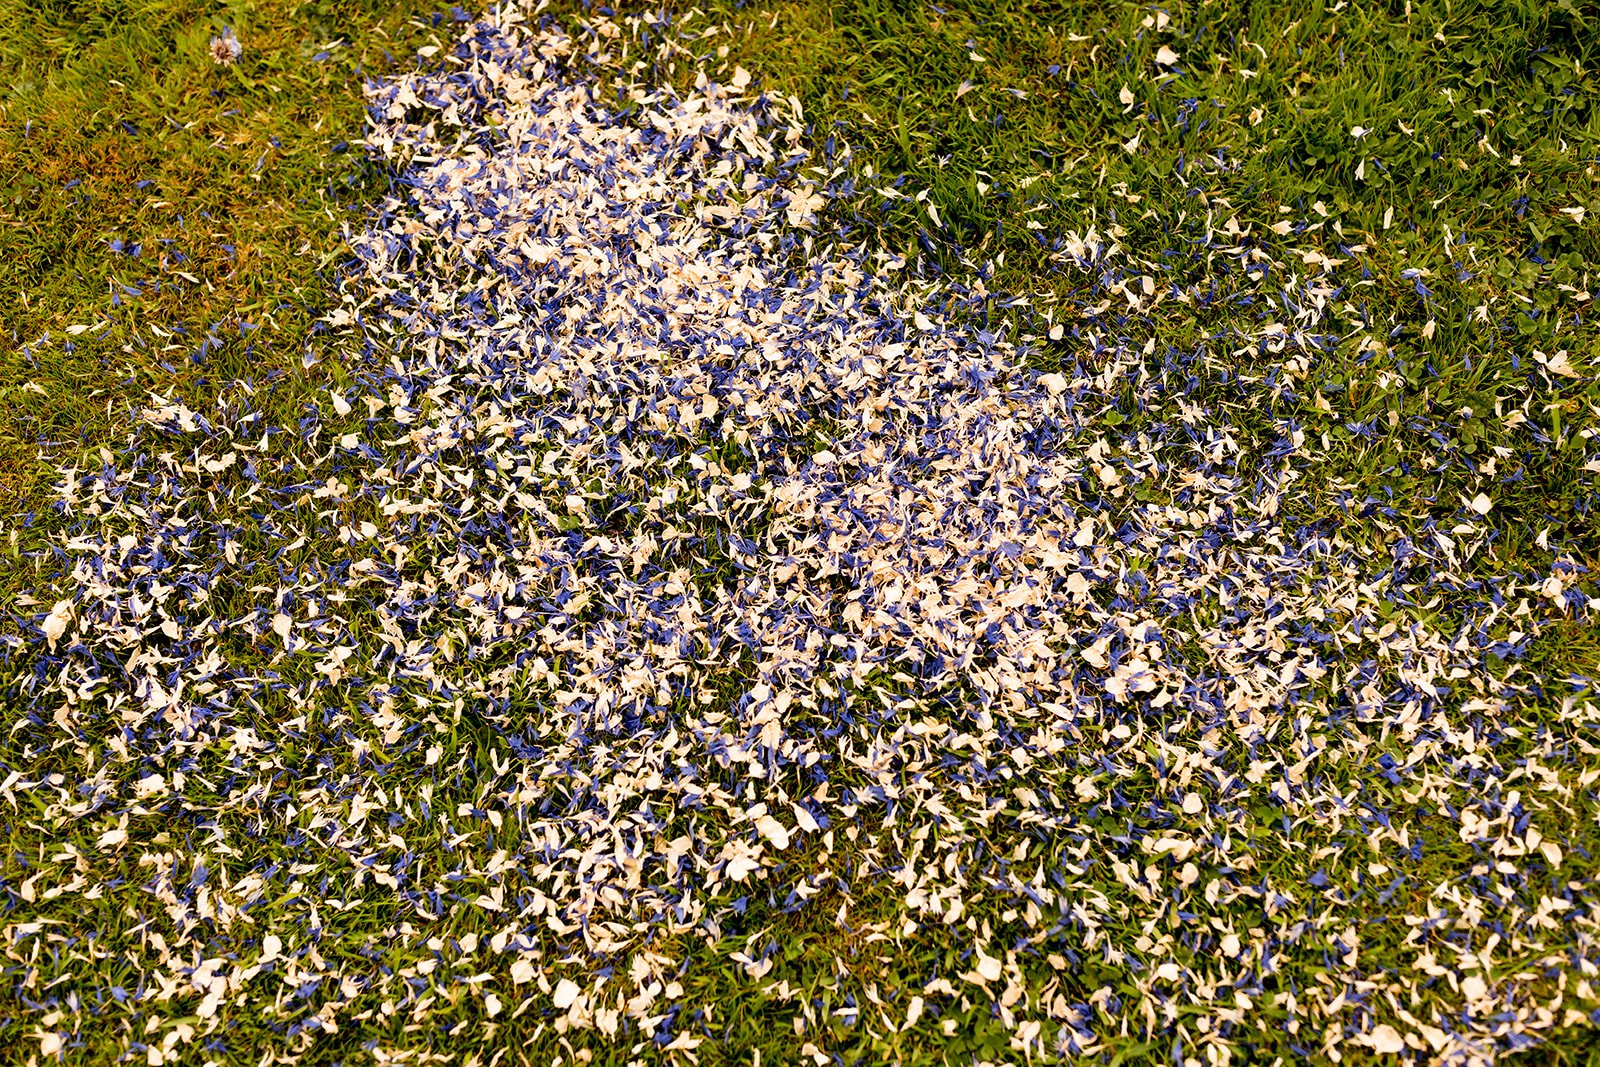 Dried flower confetti